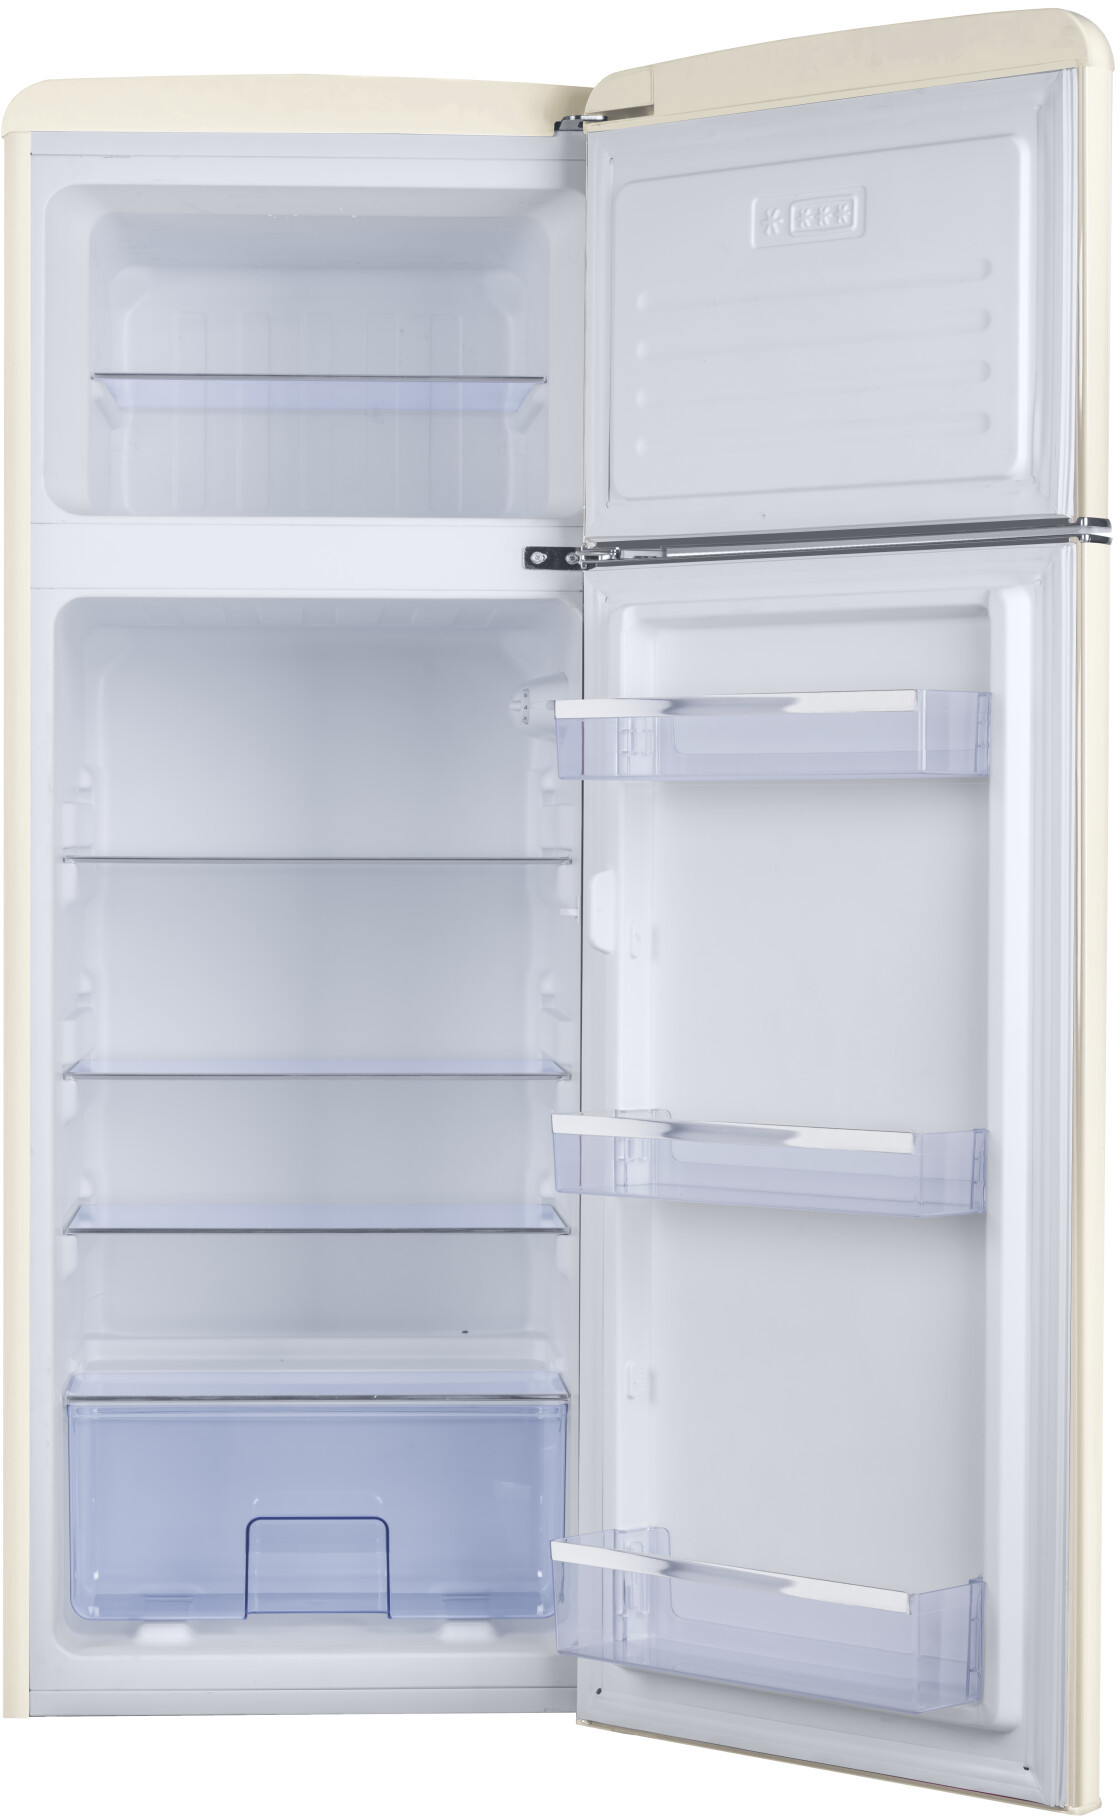 Холодильник с морозильником dexp rf. Холодильник DEXP RF-cl205nmg/w. DEXP RF-cl205nmg/w. Холодильник DEXP RF 205. DEXP RF-cl205nmg/w белый.